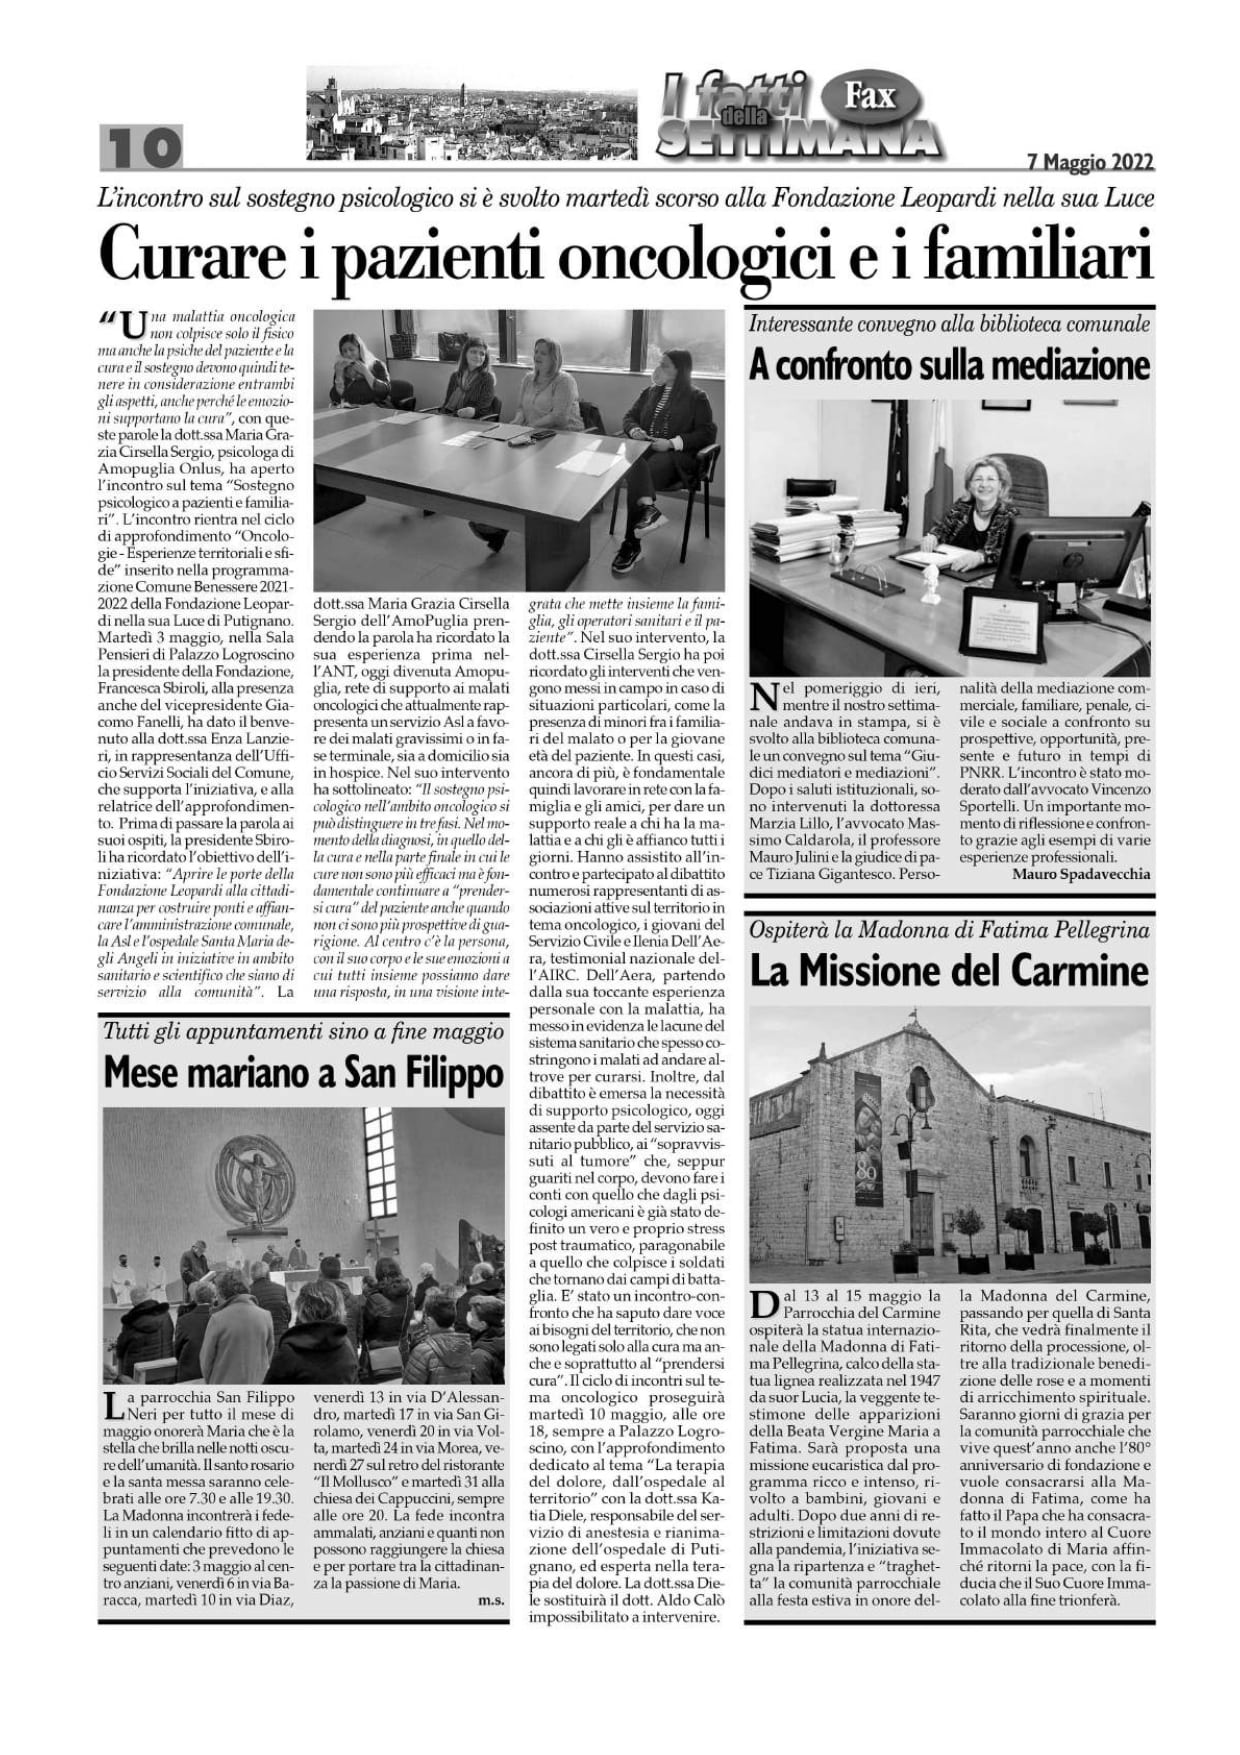 Fax Putignano 7 maggio 22. comp